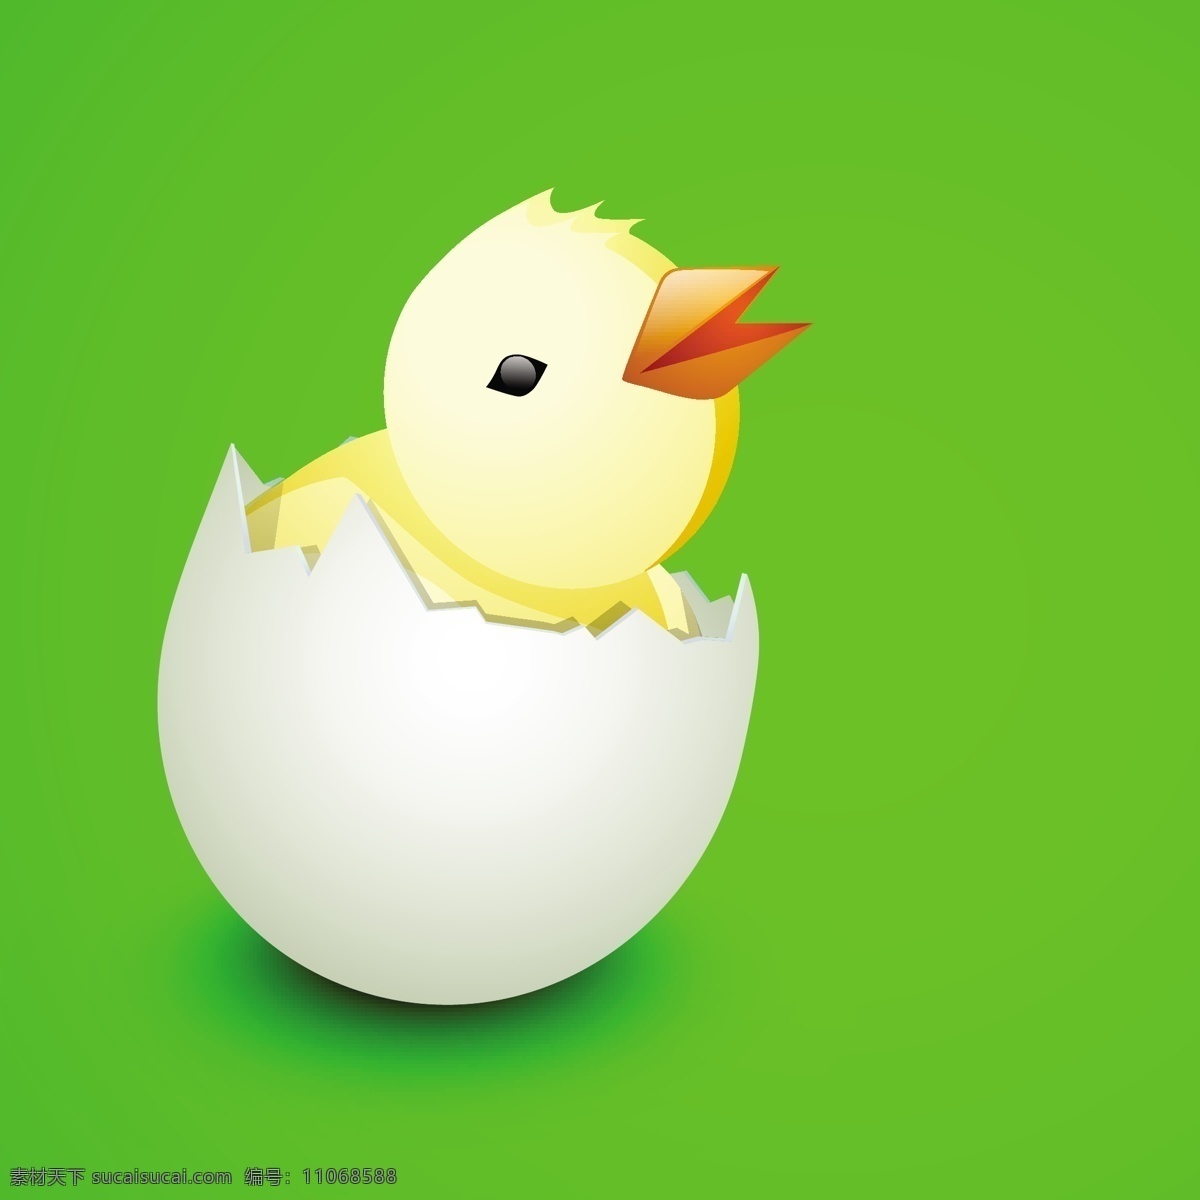 复活节 快乐 背景 卡 可爱 小鸡 蛋 光泽 绿色 矢量图 日常生活